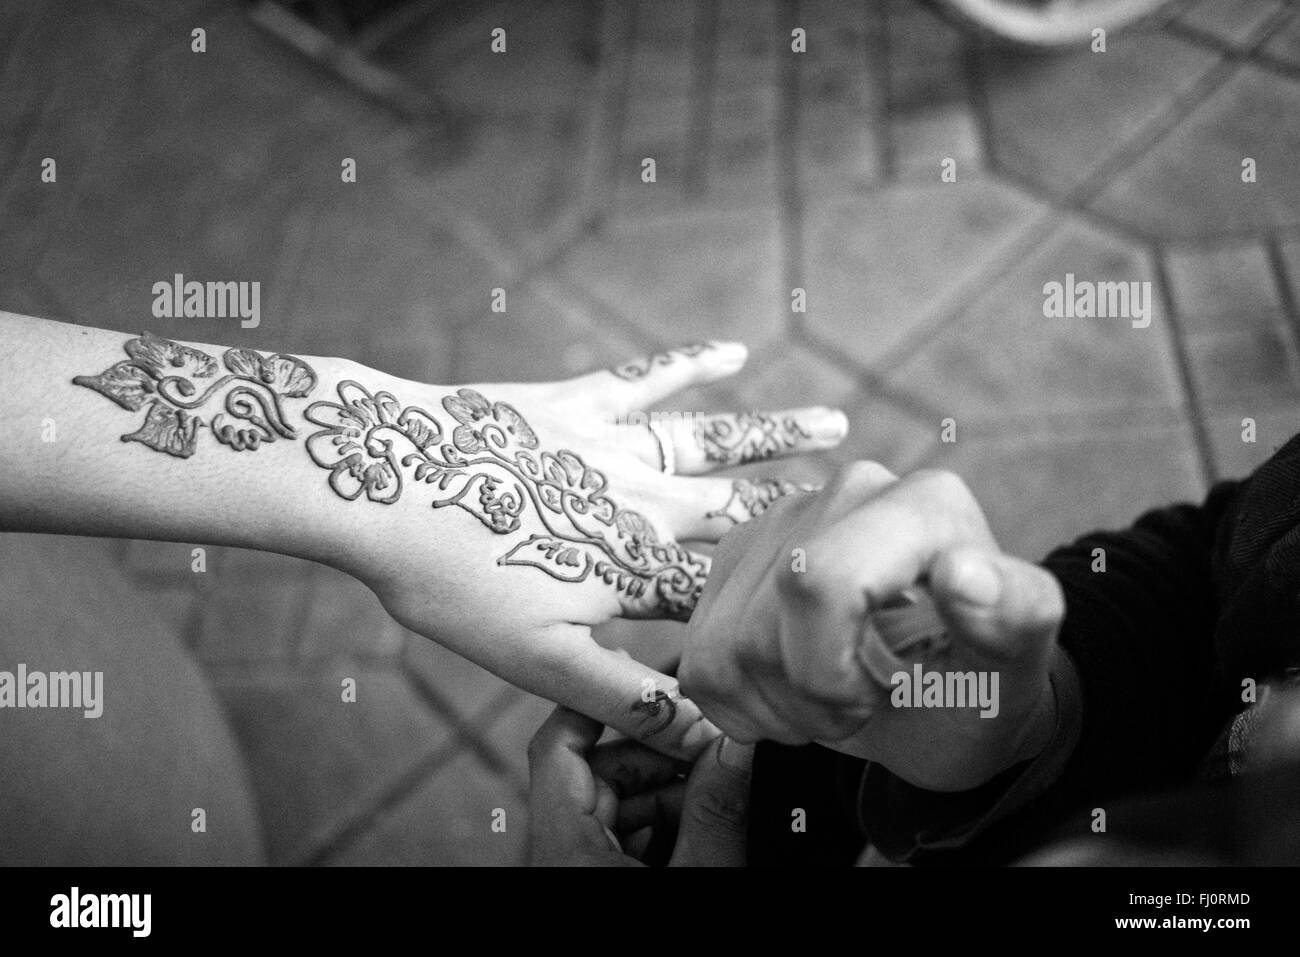 Tatouage au henné appliqué dans le 'Jeema el fna' - Maroc Banque D'Images